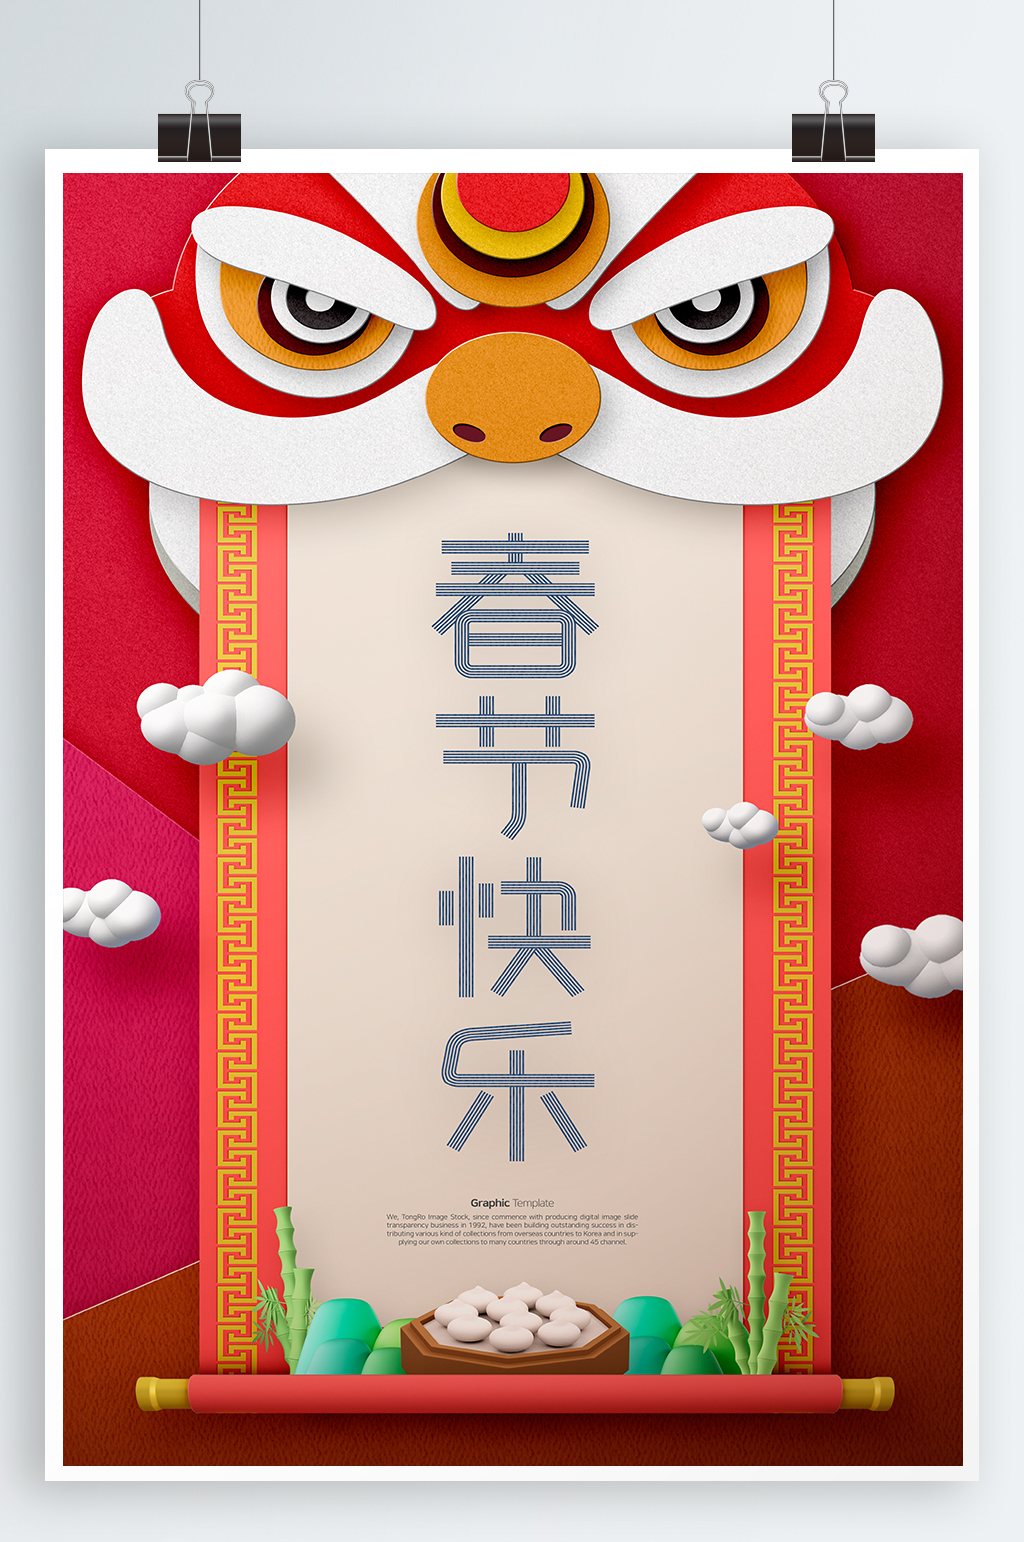 春节快乐宣传海报